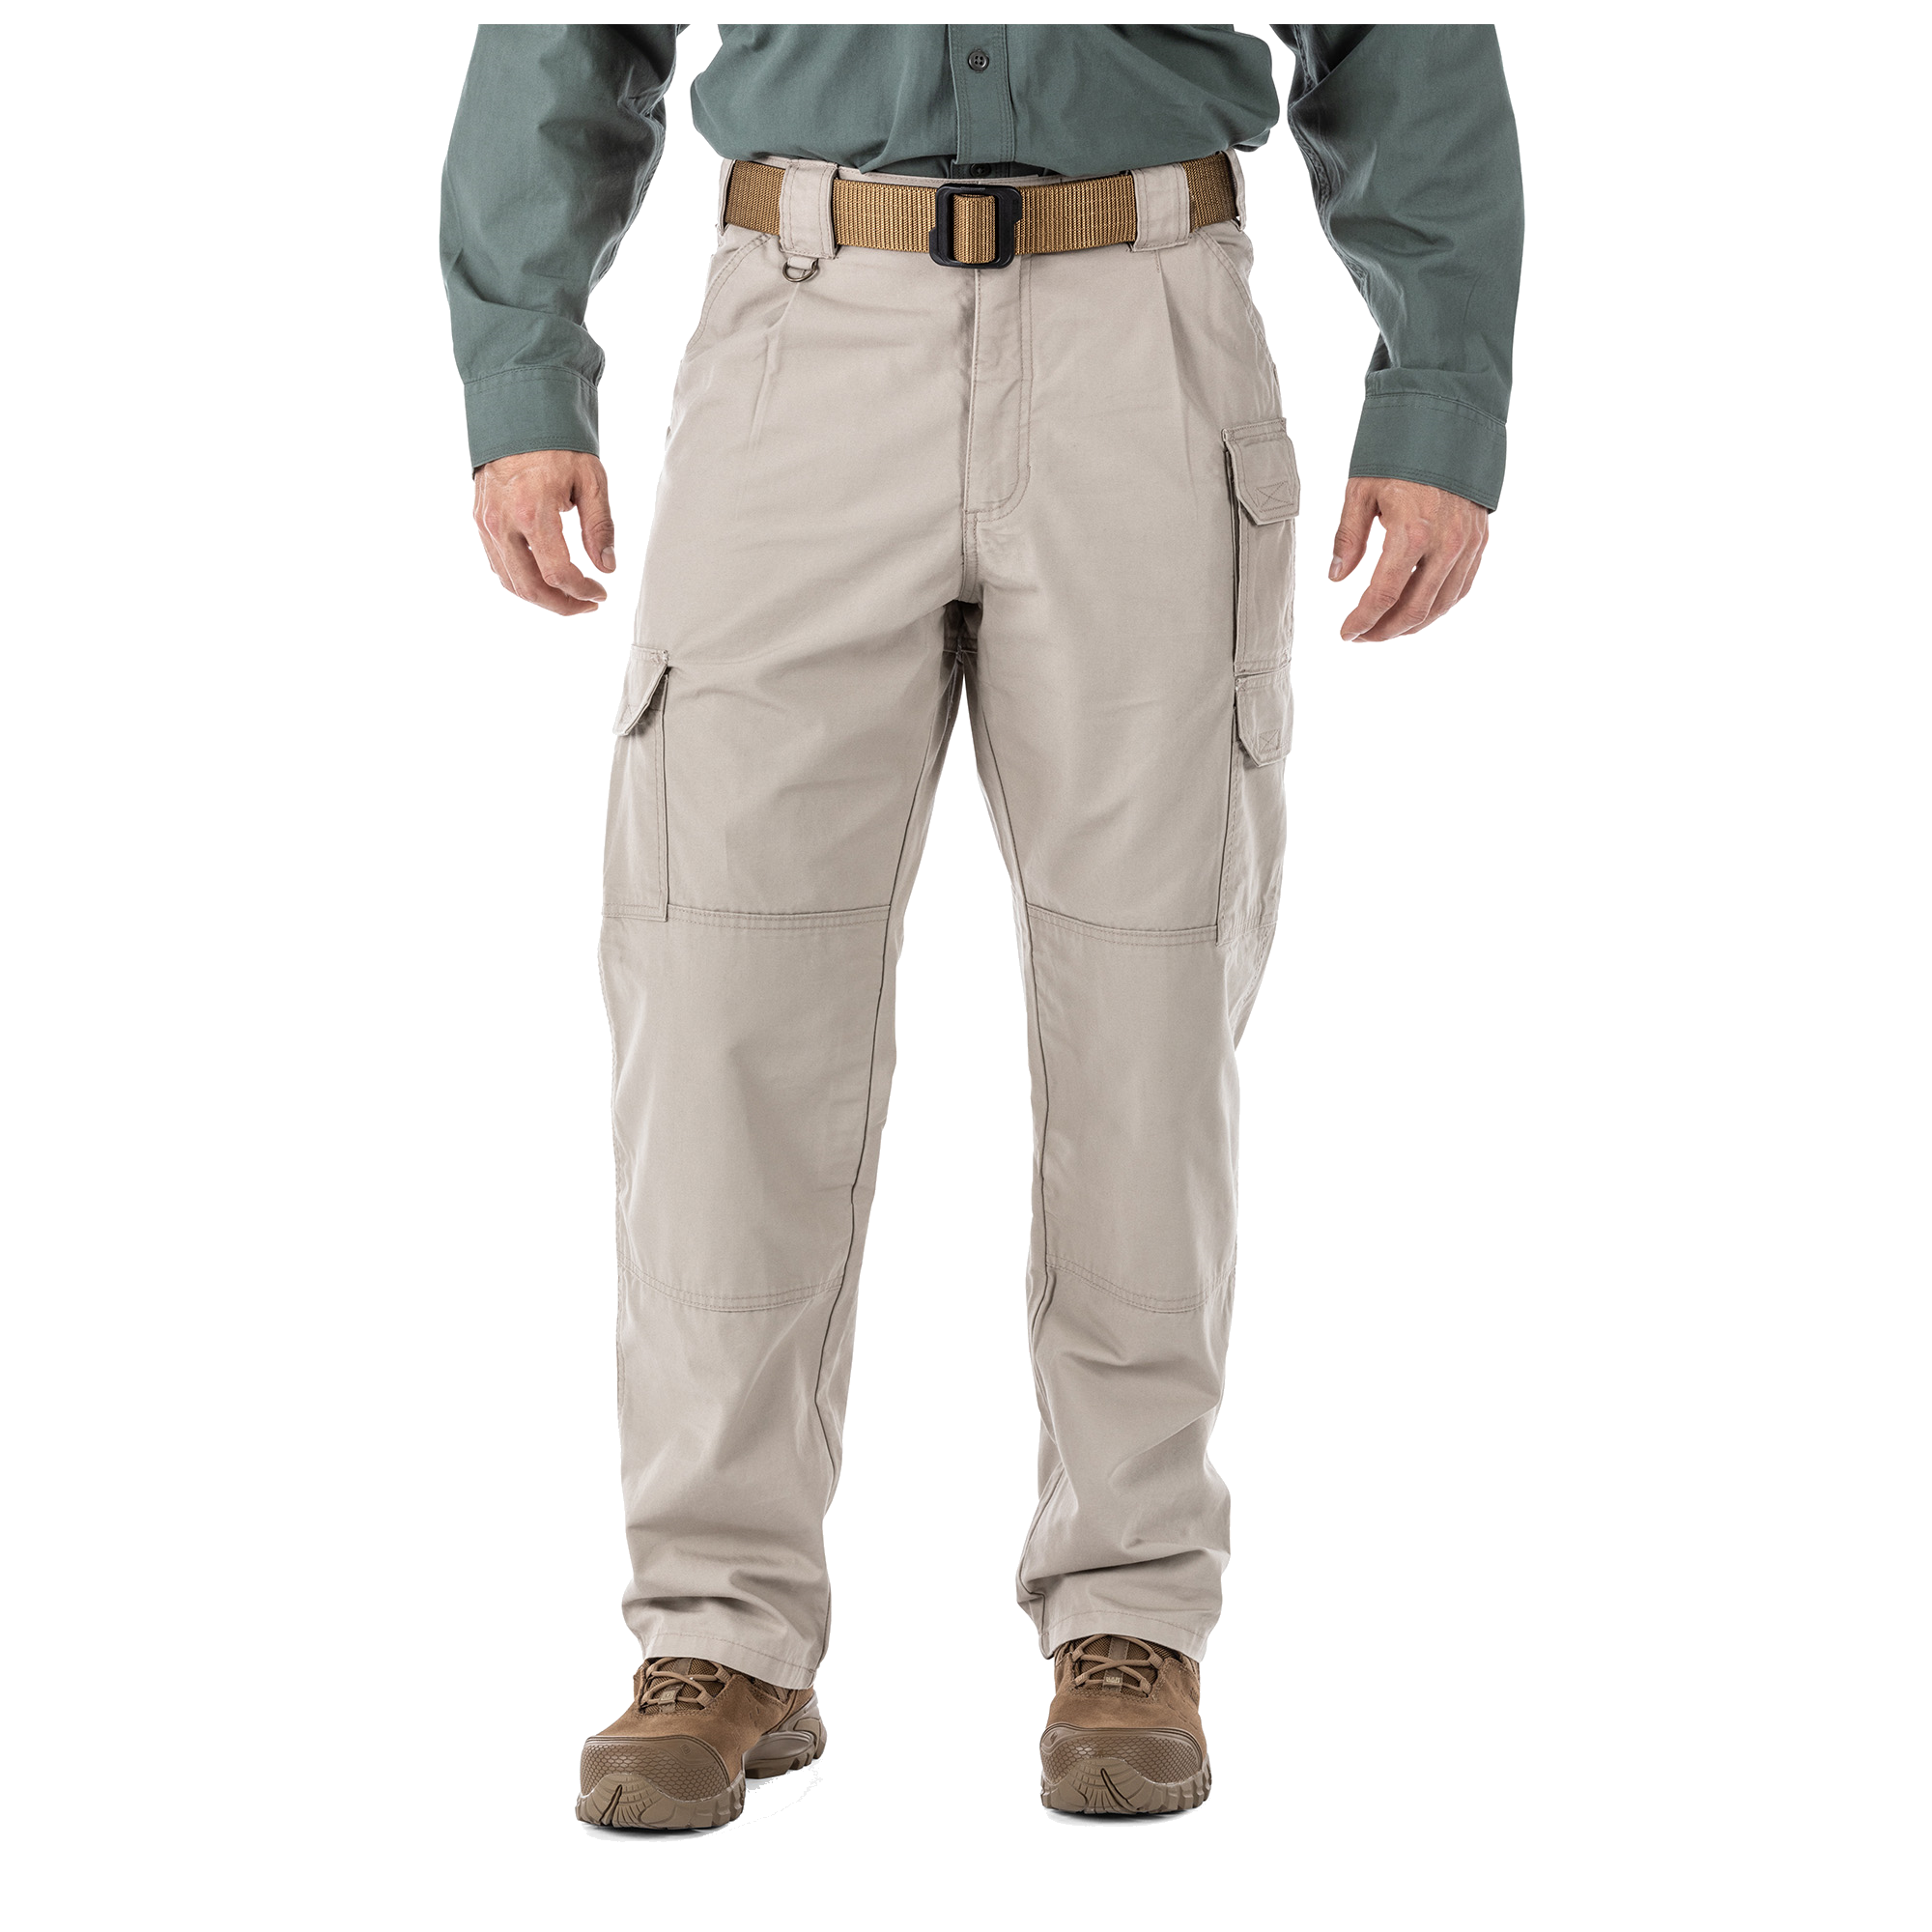 Men's 5.11 Tactical Cargo Pants - Caliber 7